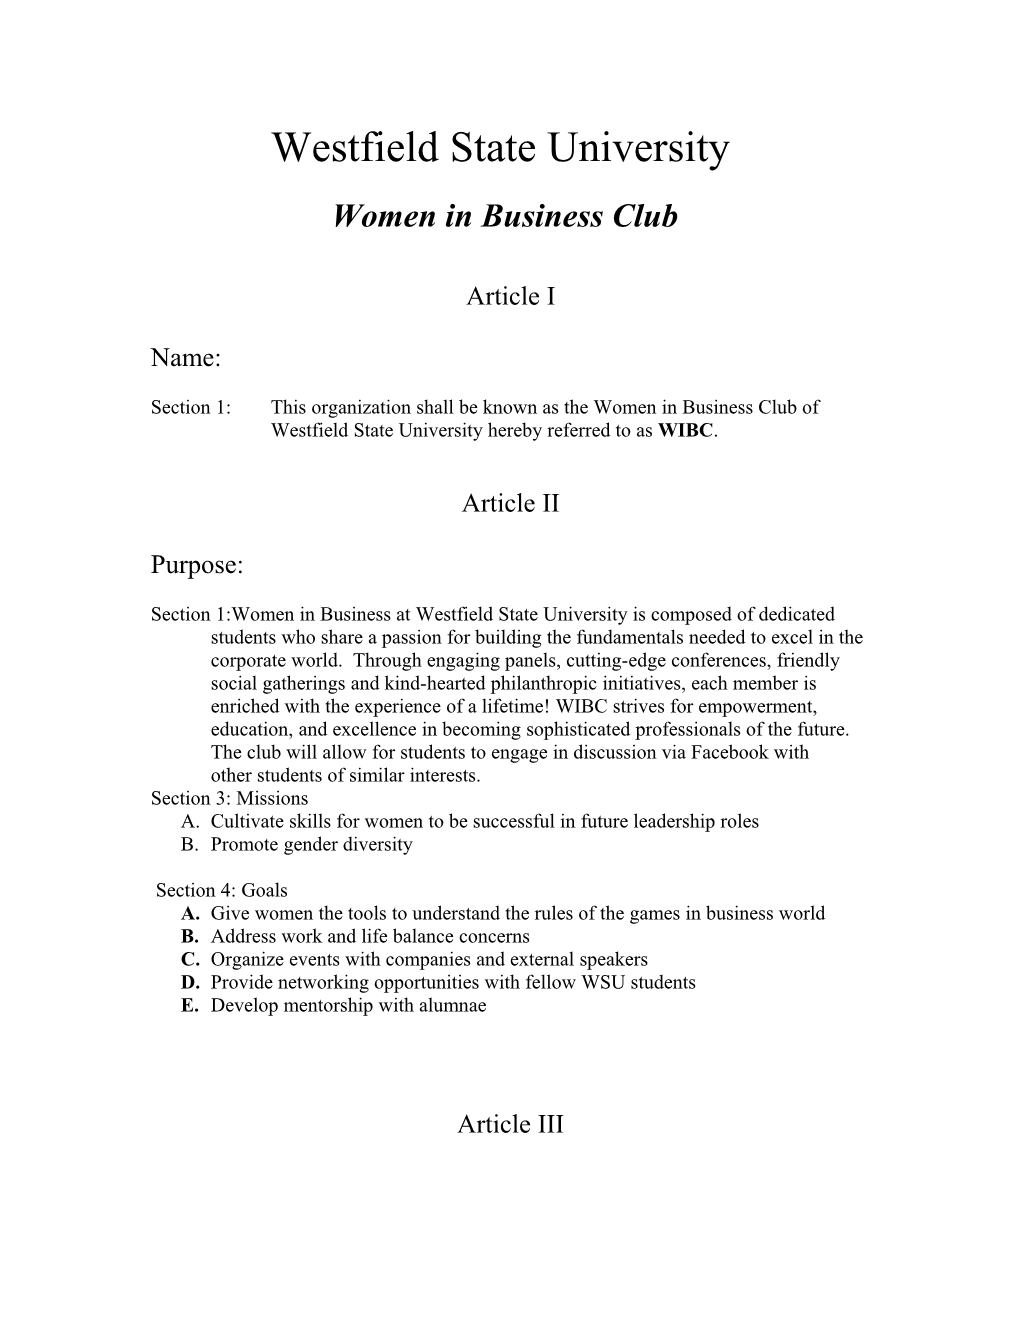 Women in Business Club